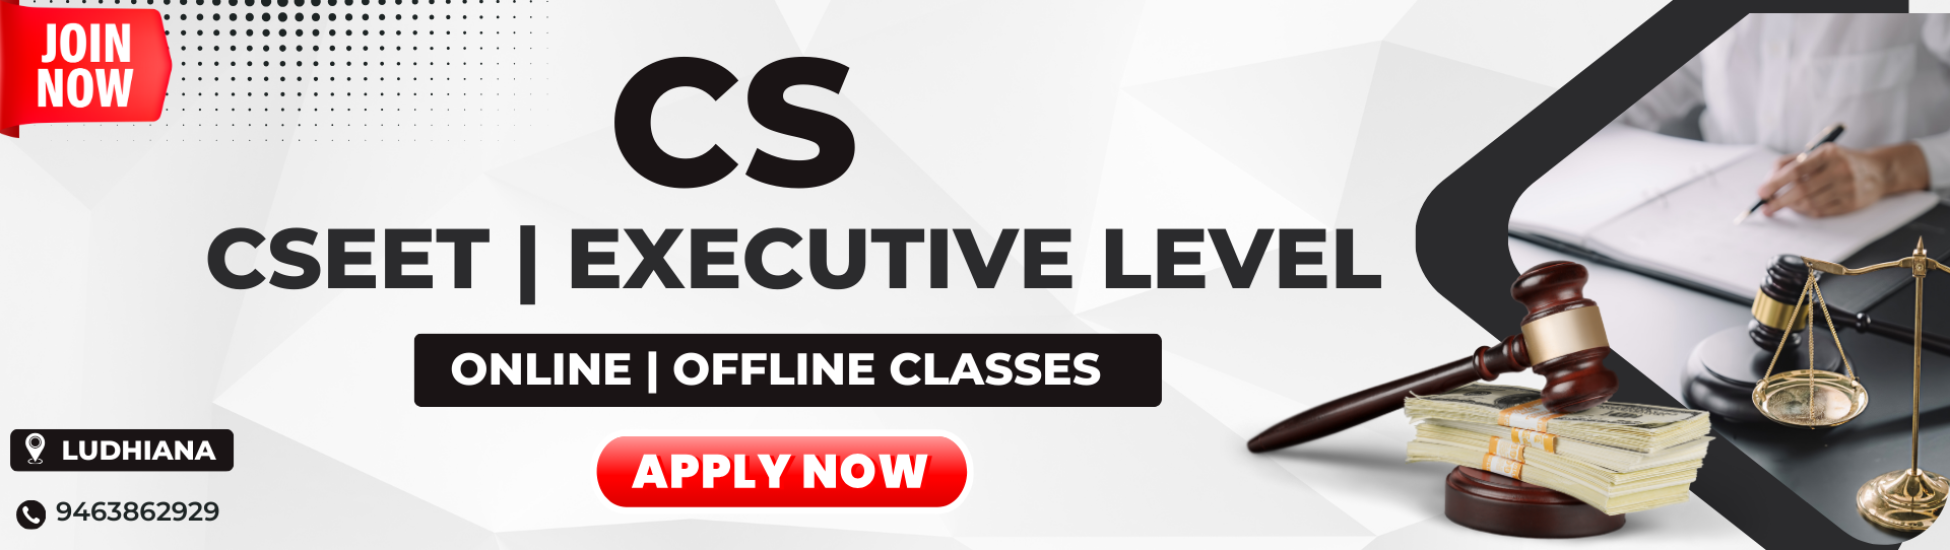 CS (Online | Offline Classes)